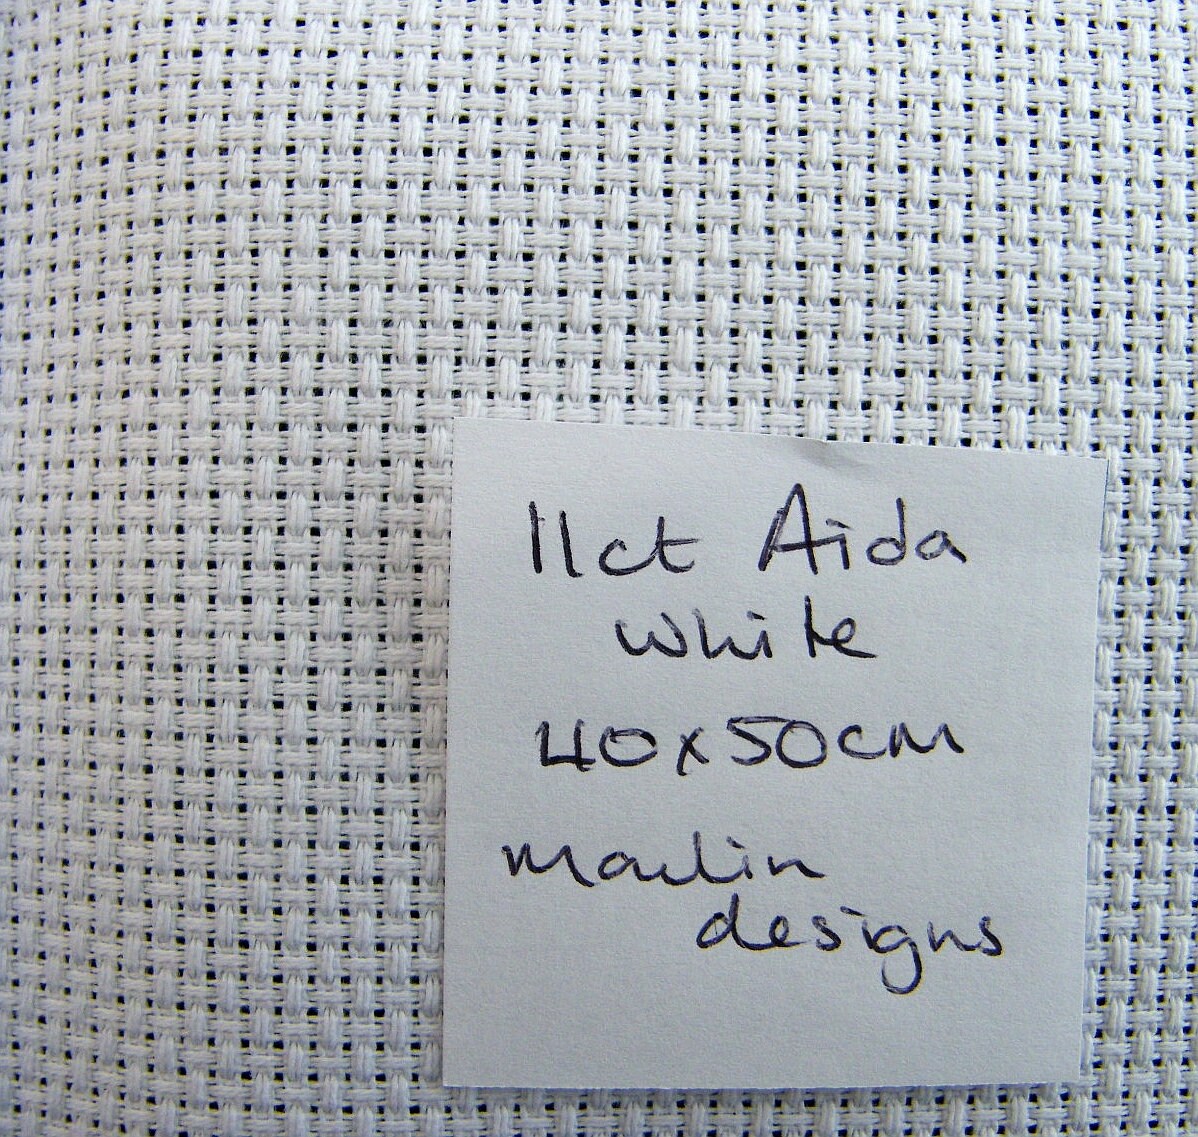 white cross stitch aida 11CT fabric cotton stitching embroidery